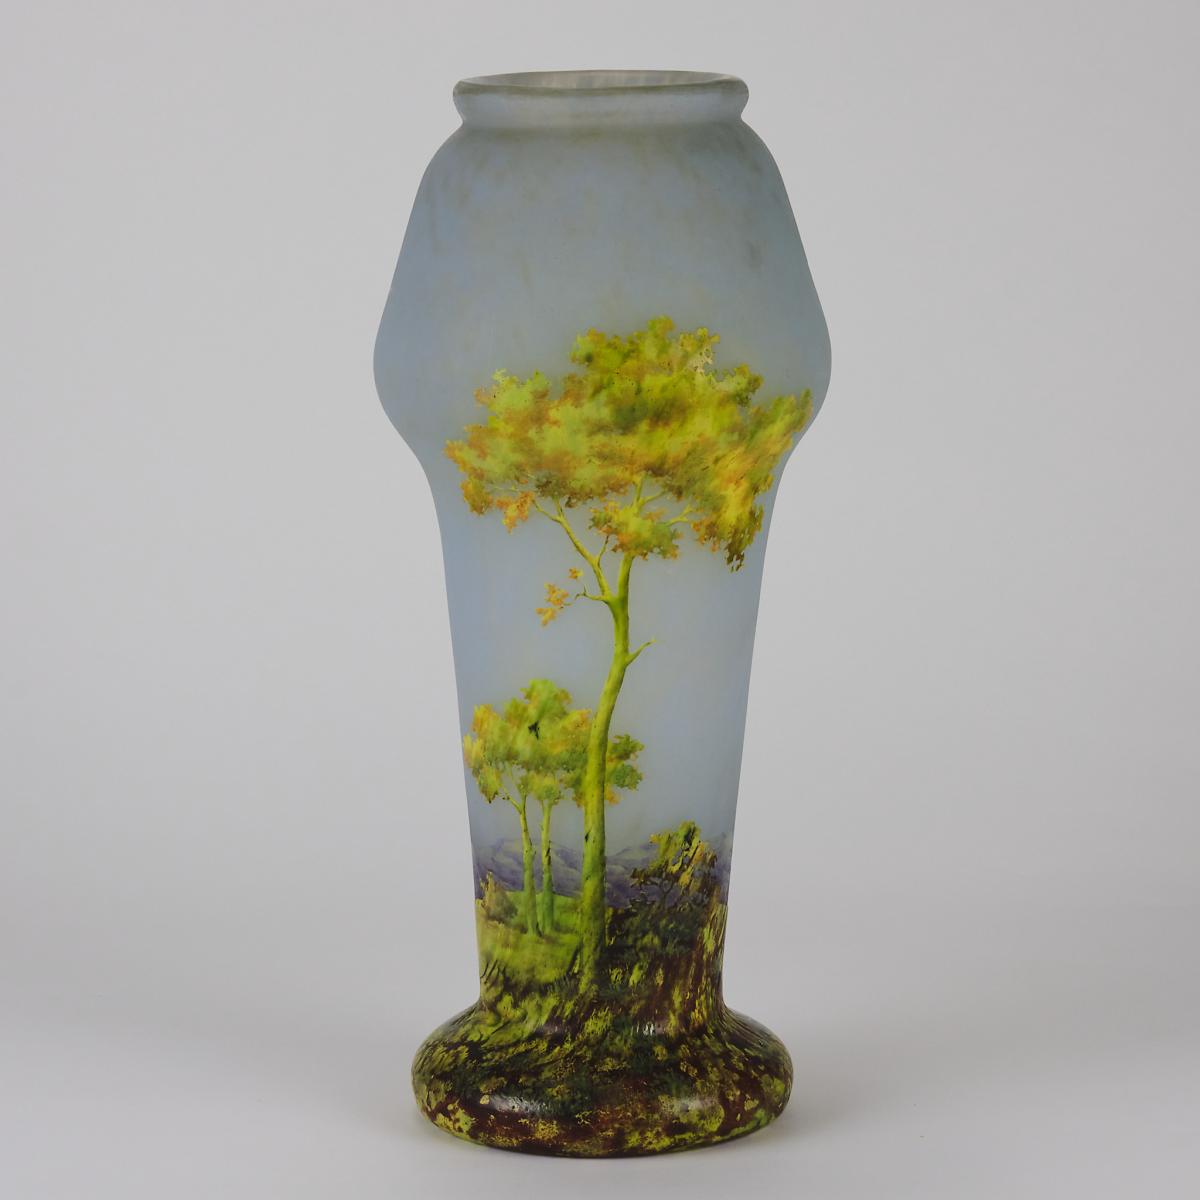 20th Century Cameo Glass Landscape Vase Entitled "Paysage d'Été" by Daum Frères - Circa 1900